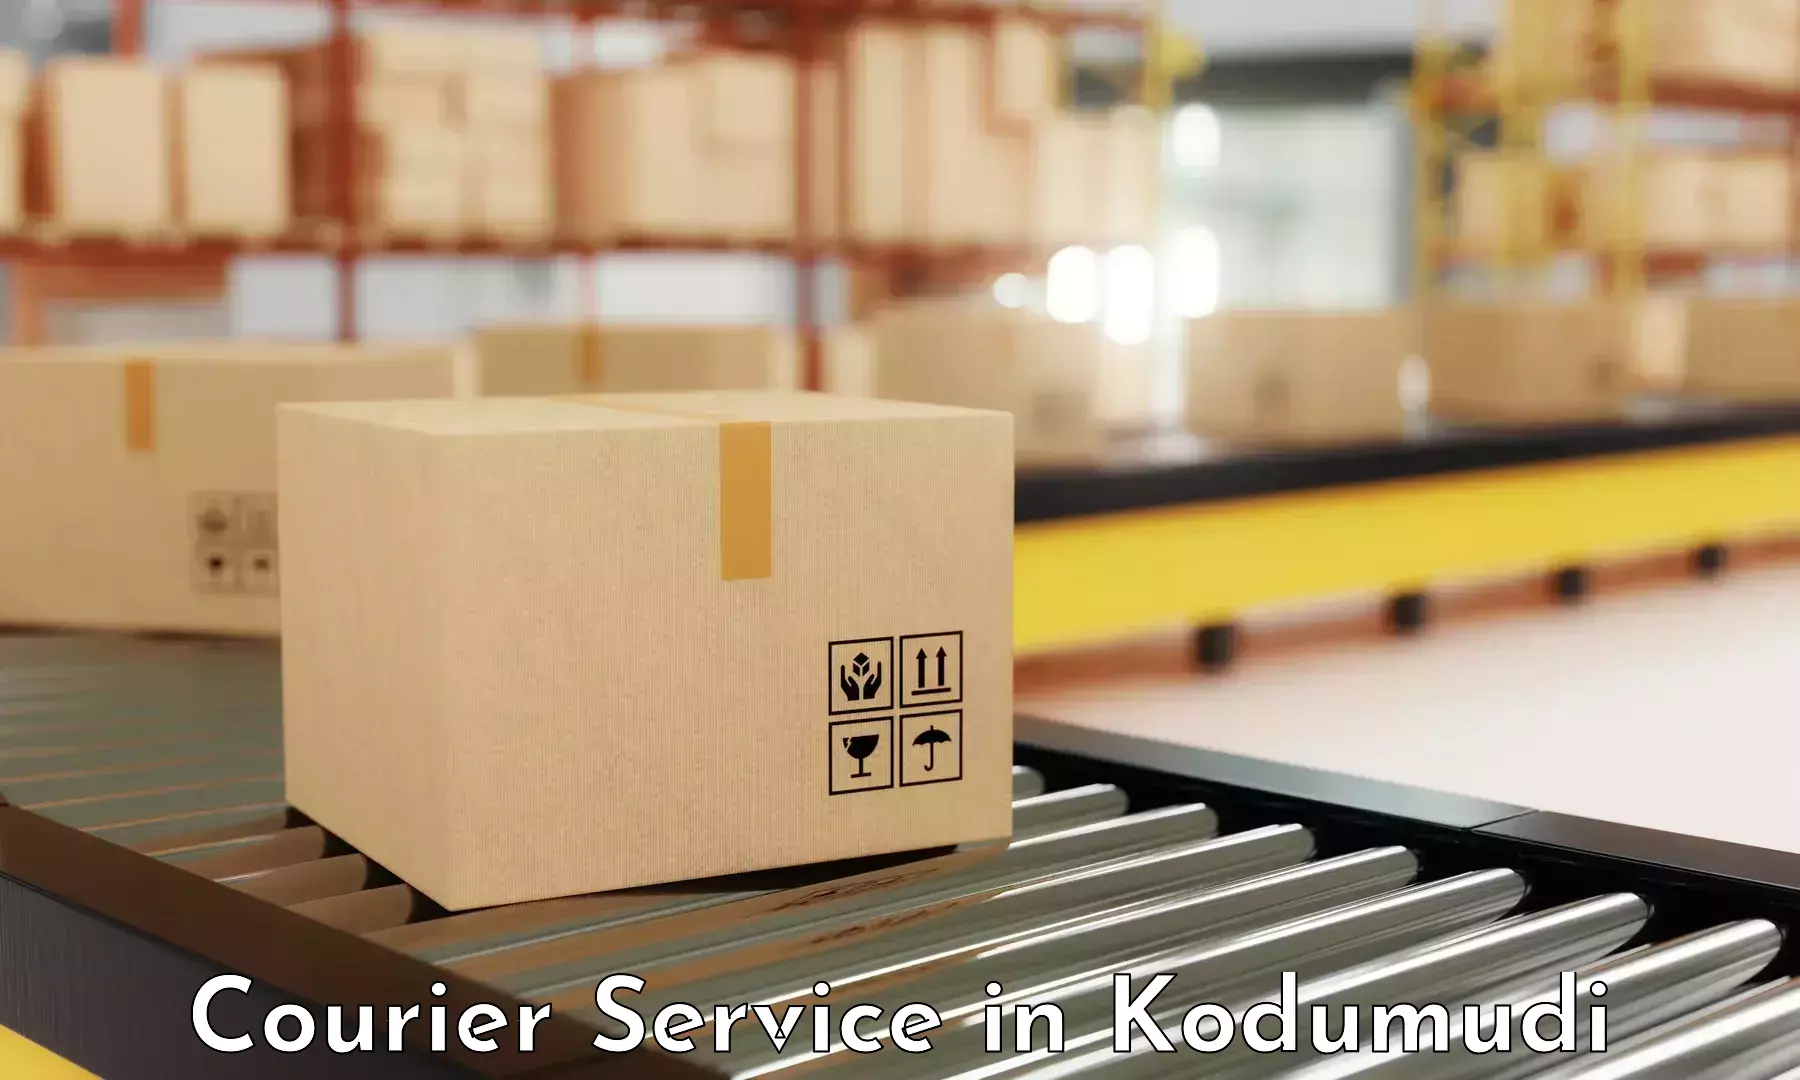 Flexible delivery schedules in Kodumudi